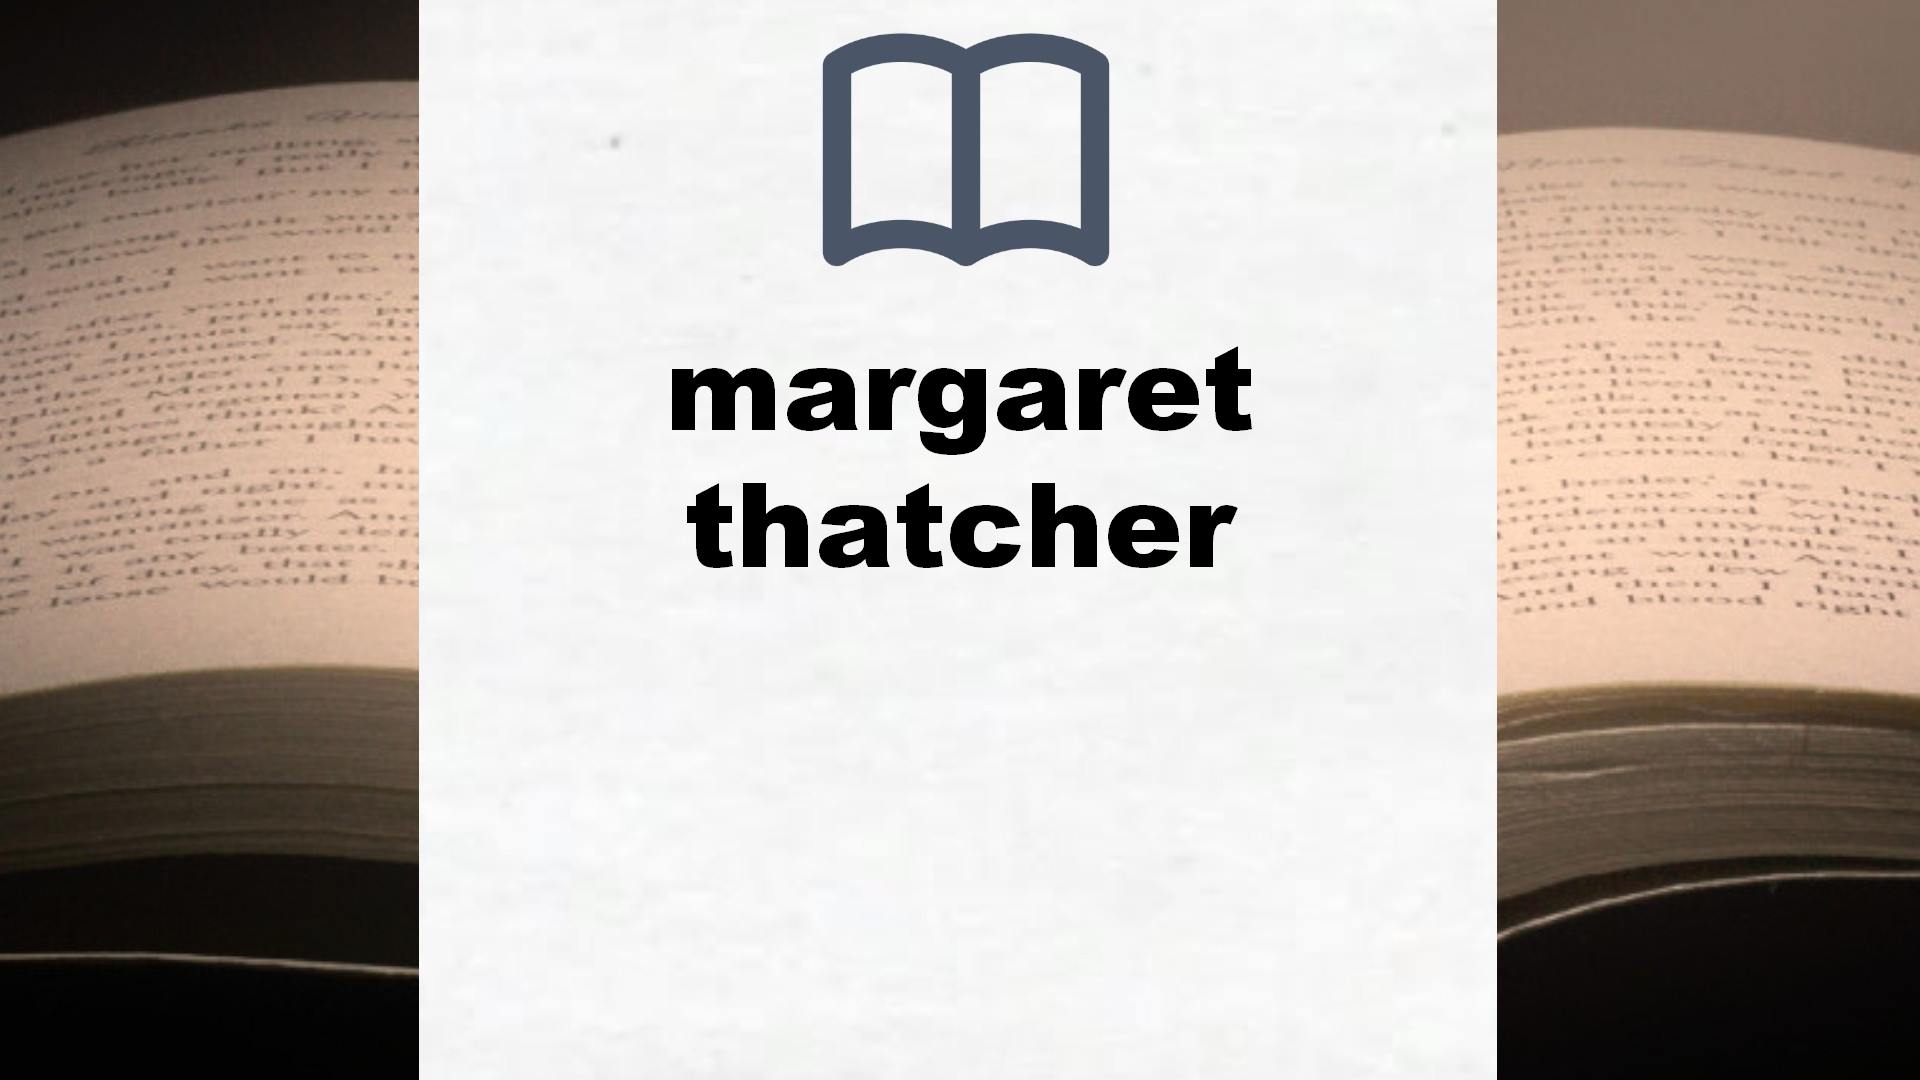 Libros sobre margaret thatcher